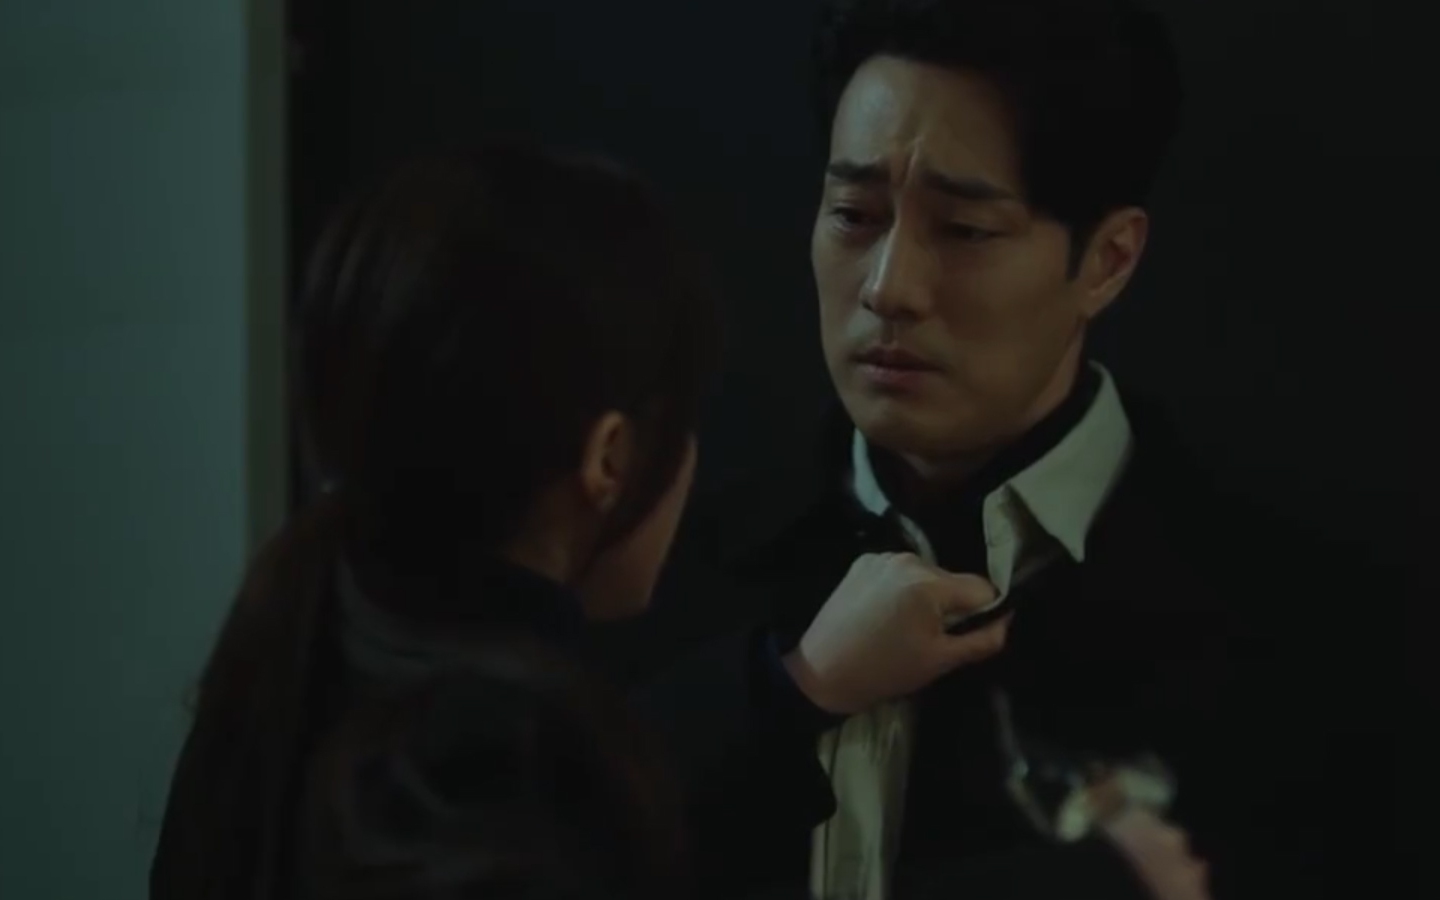 Bác sĩ luật sư tập 5: So Ji Sub tiết lộ sự thật chấn động cho tình cũ, bắt tay với Shin Sung Rok